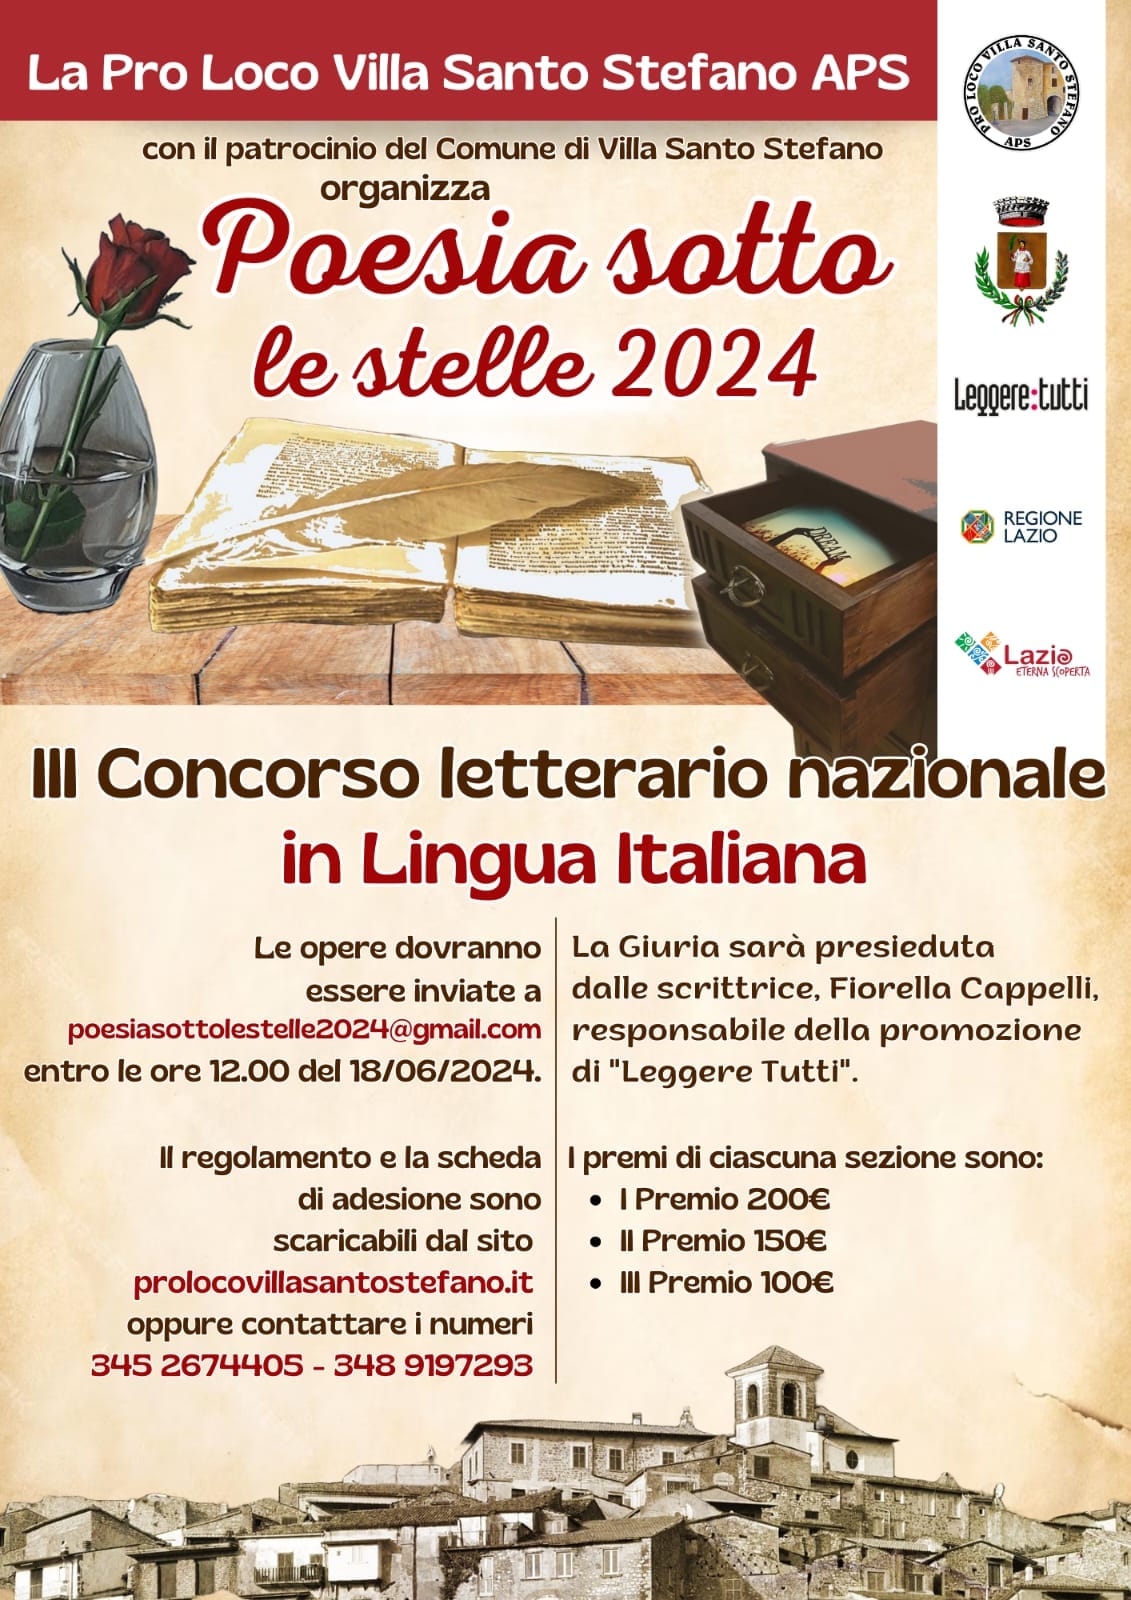 Villa Santo Stefano: "Poesia sotto le stelle 2024" @ Villa Santo Stefano